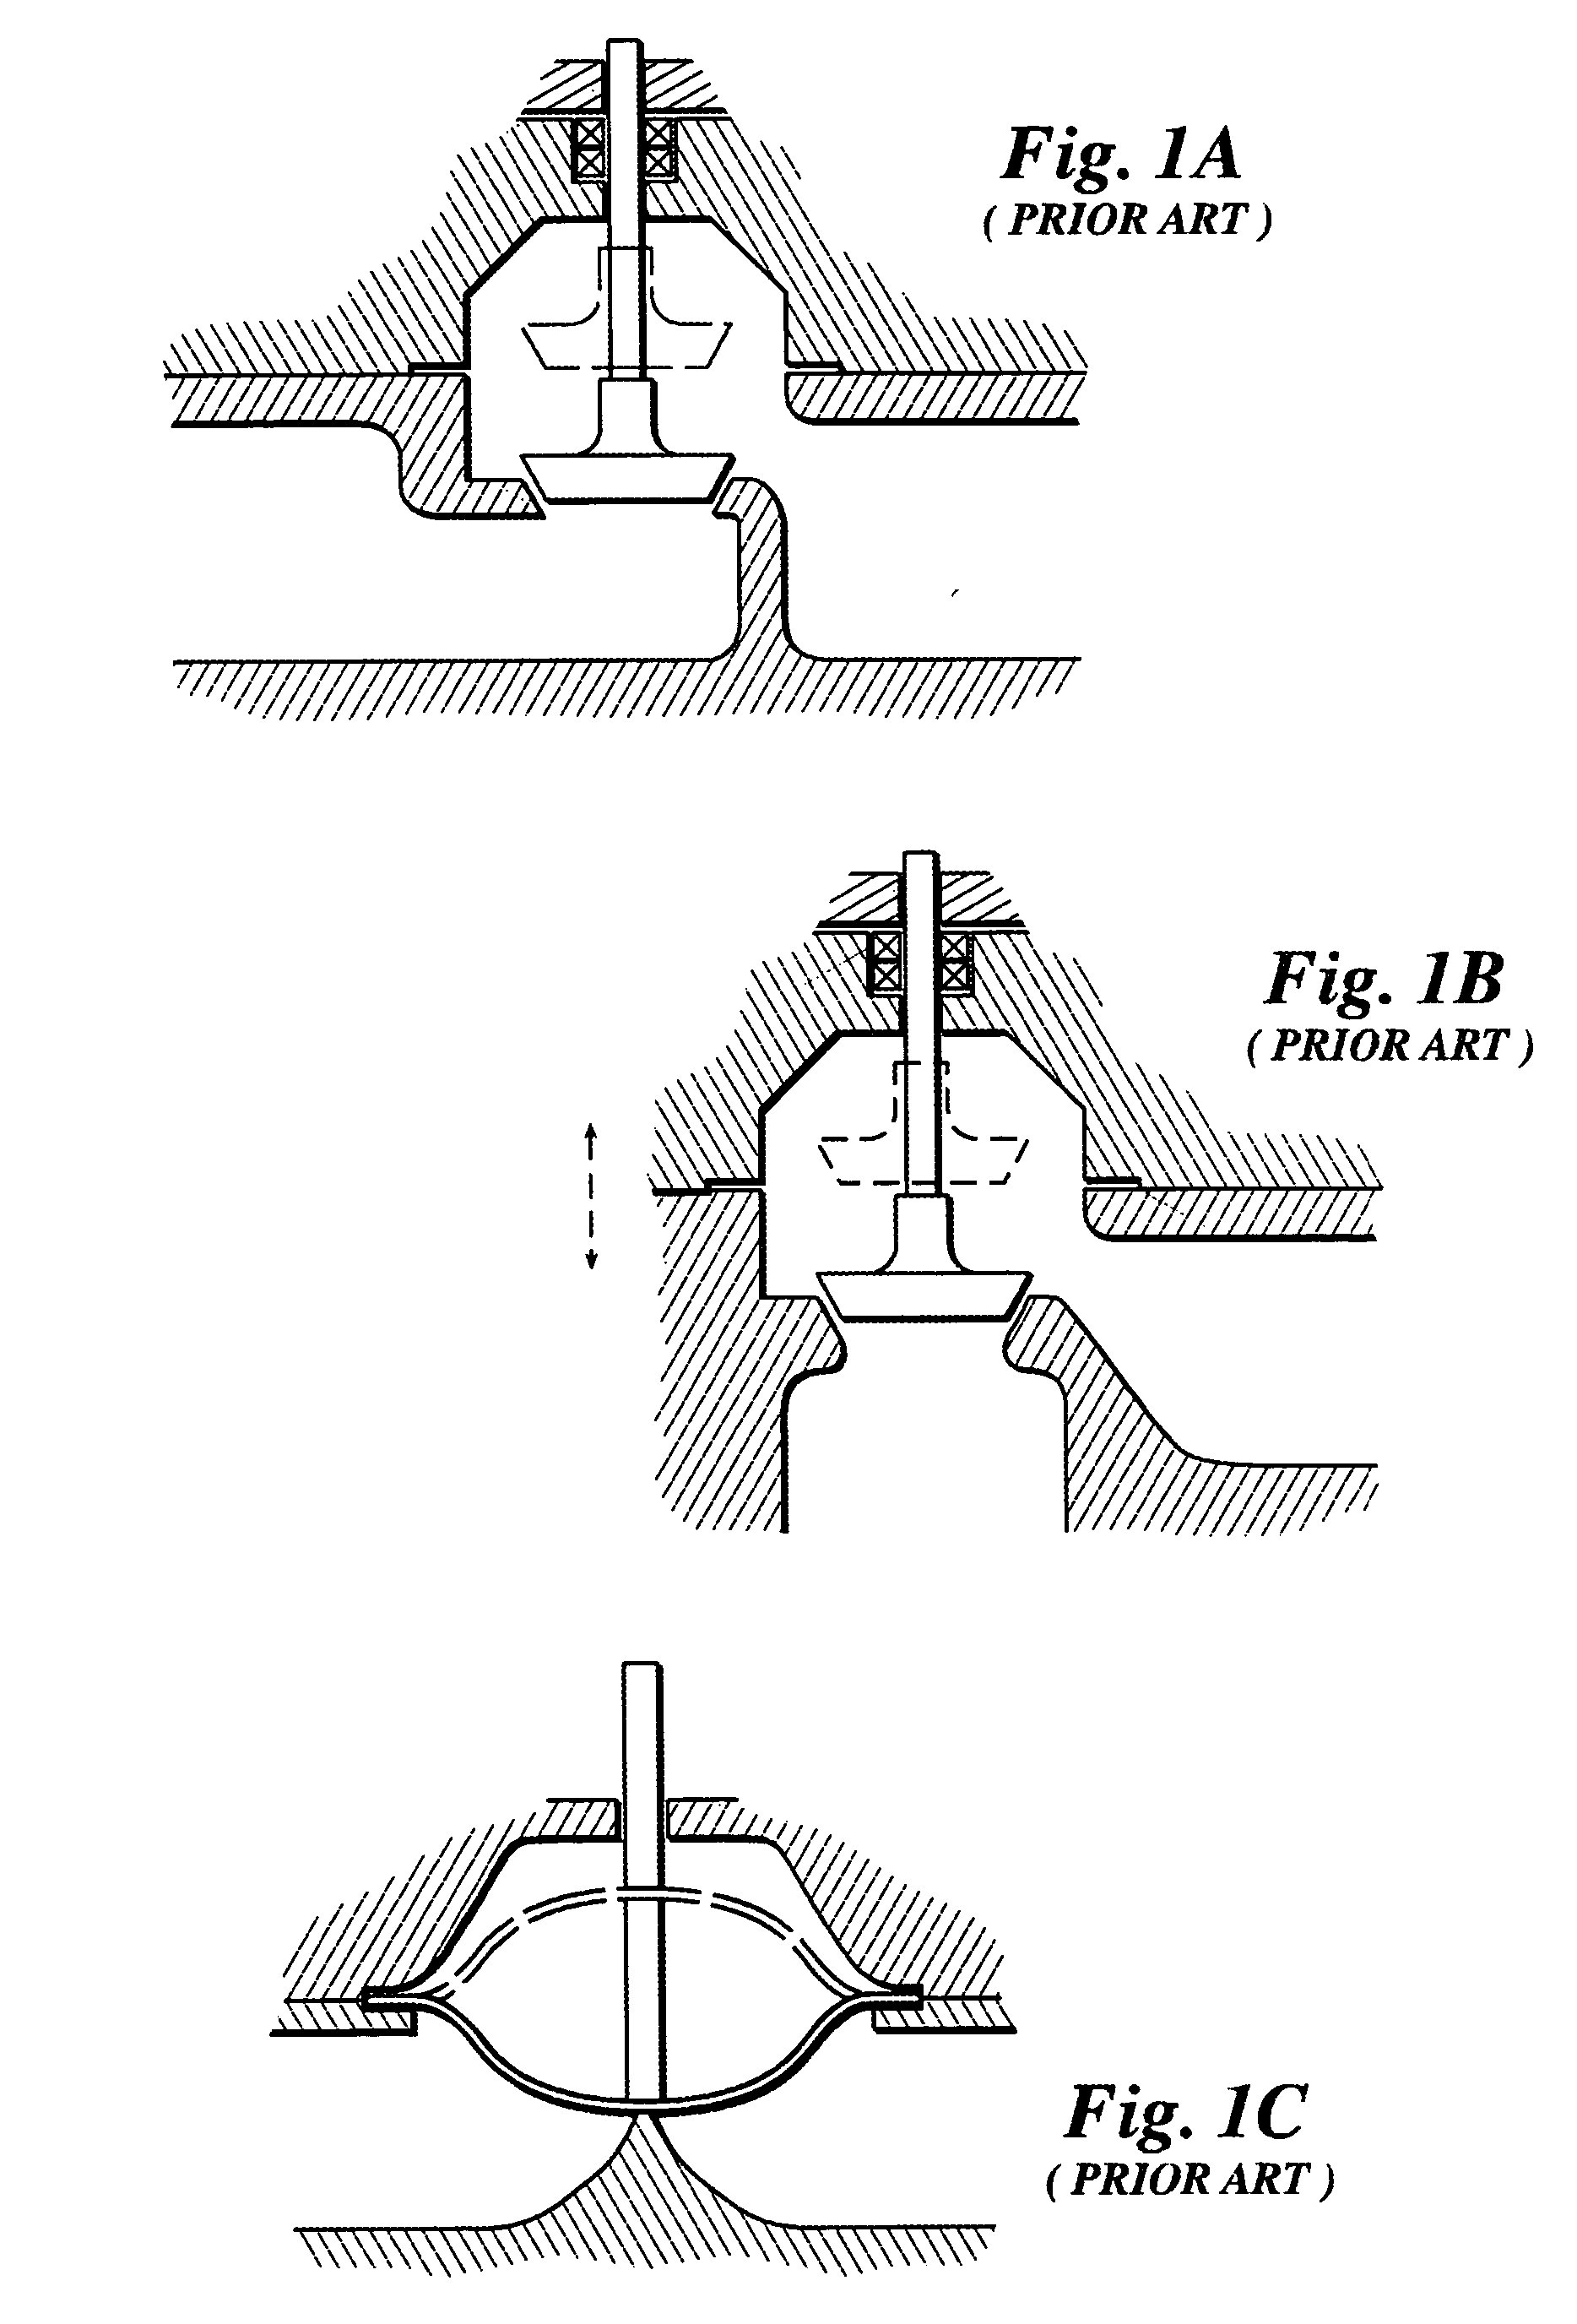 Split ball valve